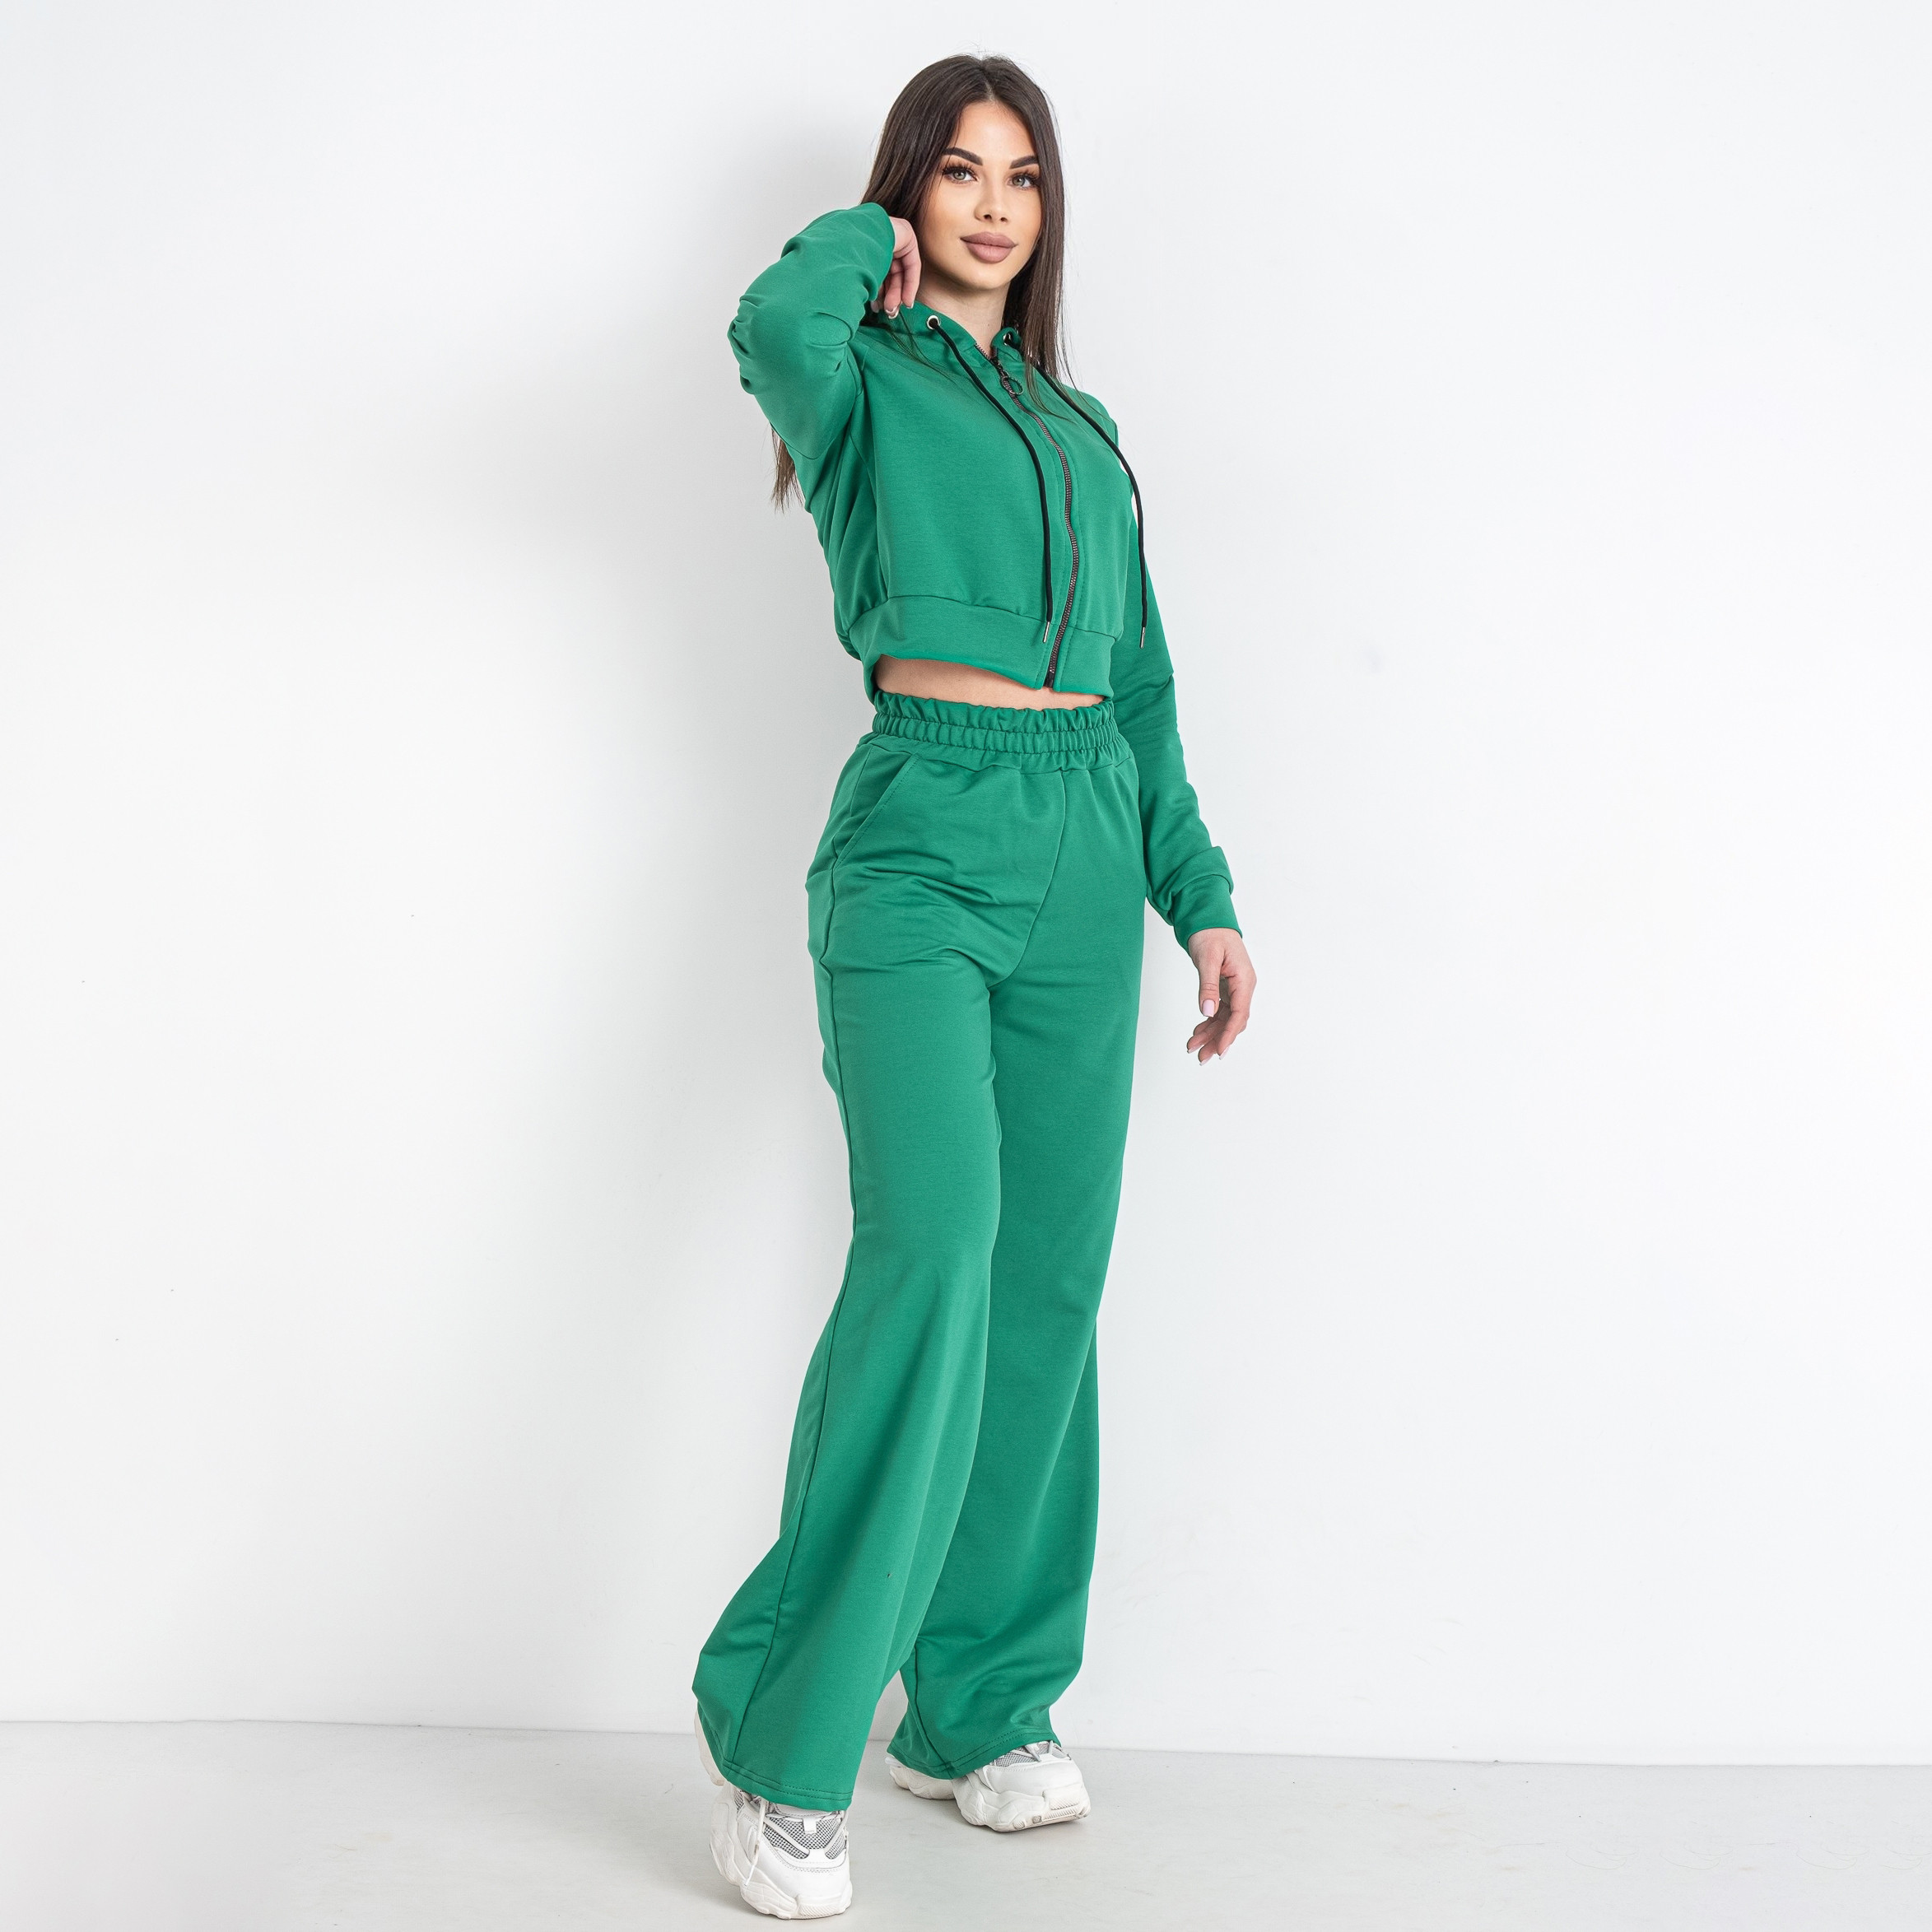 0575-75 зеленый женский спортивный костюм (5'TH AVENUE, турецкая двунитка, 4 ед. размеры норма: 42. 44. 46. 48)